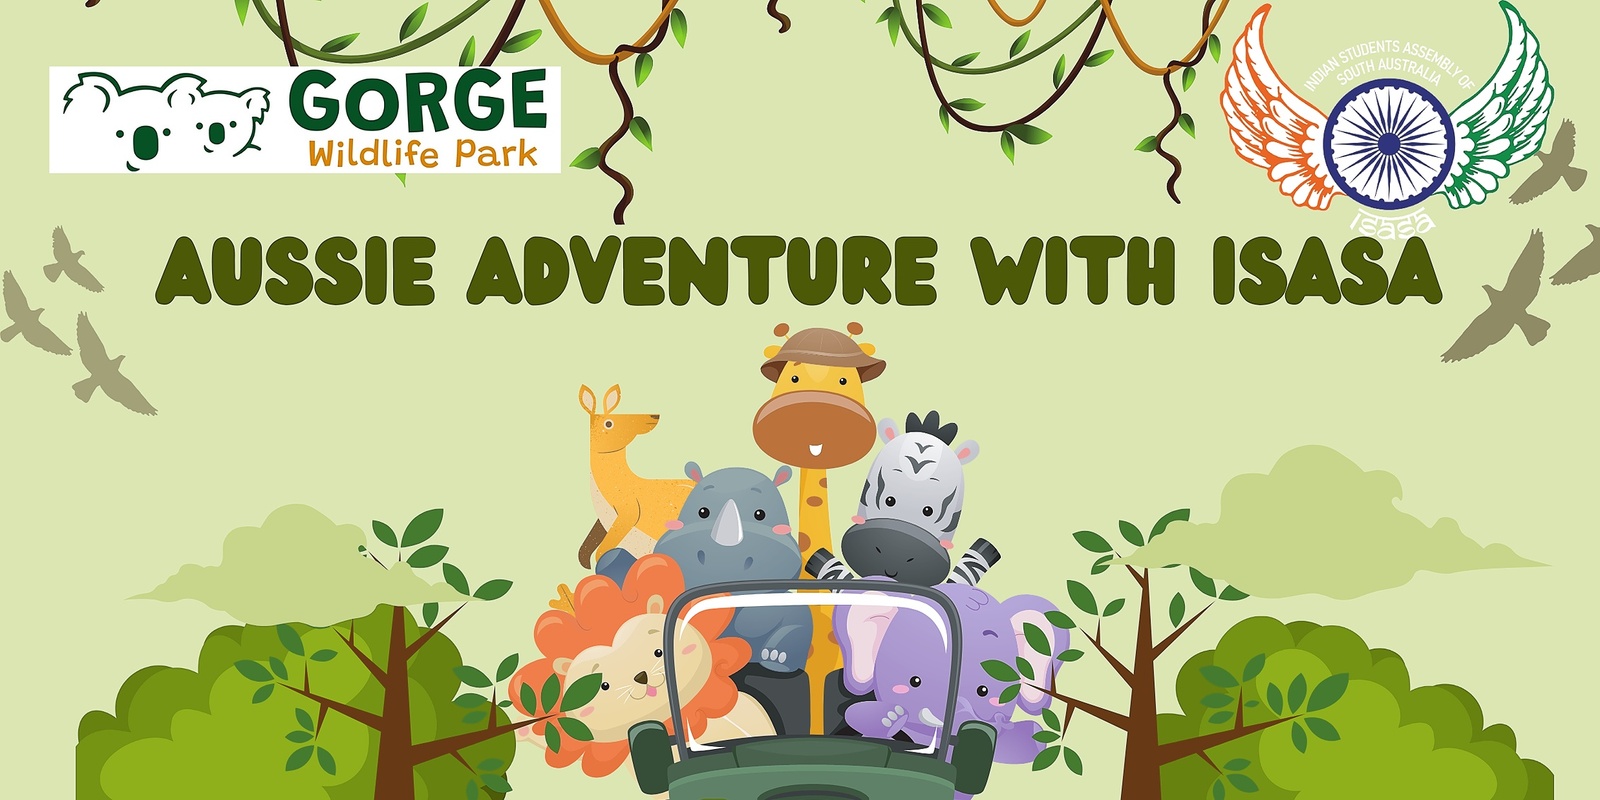 Banner image for ðŸŒ¿ðŸ¦˜ Roos & Koalas Adventure at Gorge Wildlife Park! ðŸ¦¨ðŸŒ³